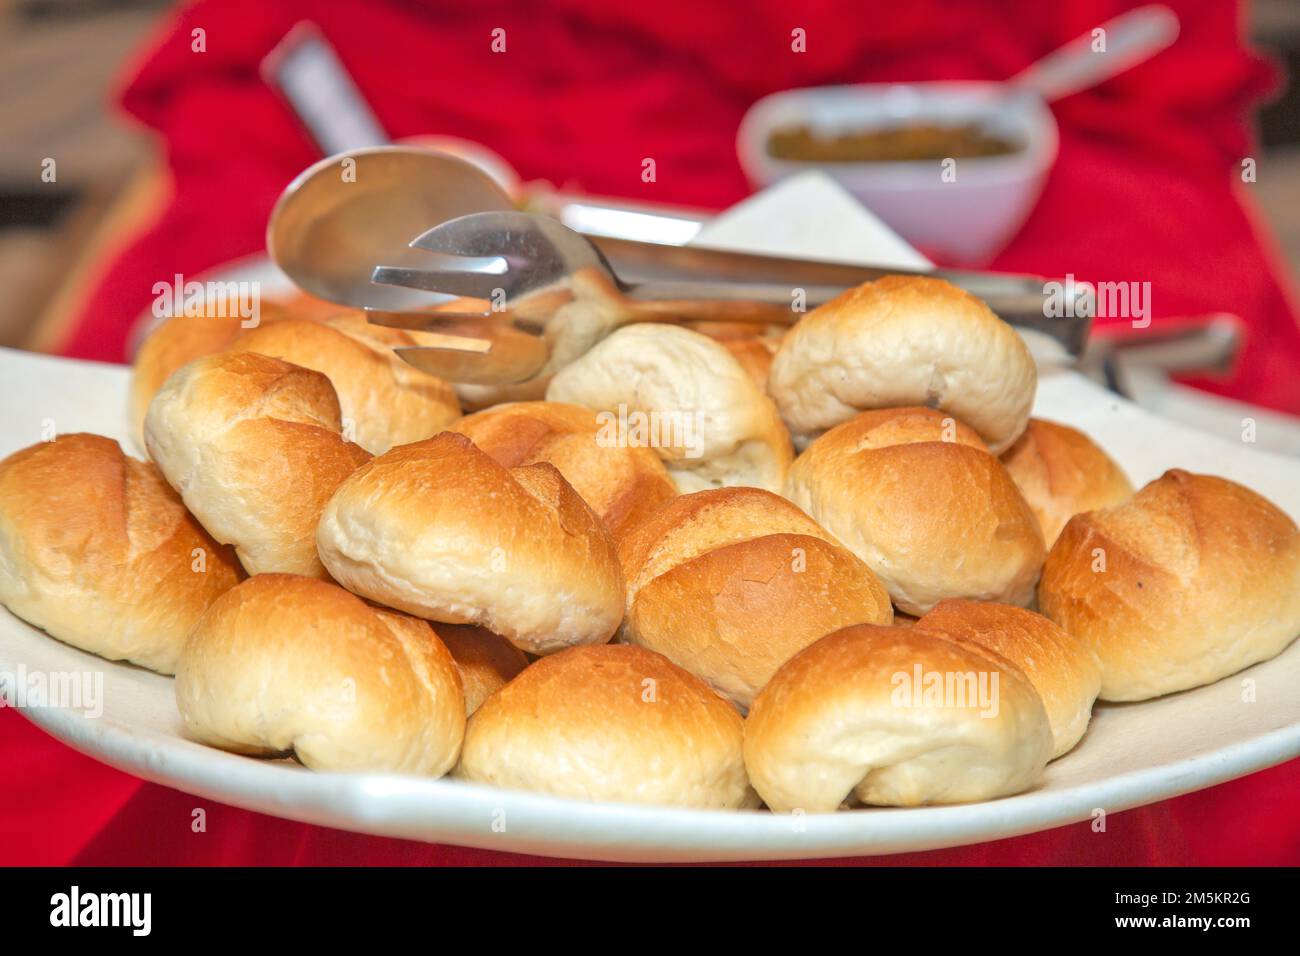 grand groupe de pains cuits sur une assiette. Banque D'Images